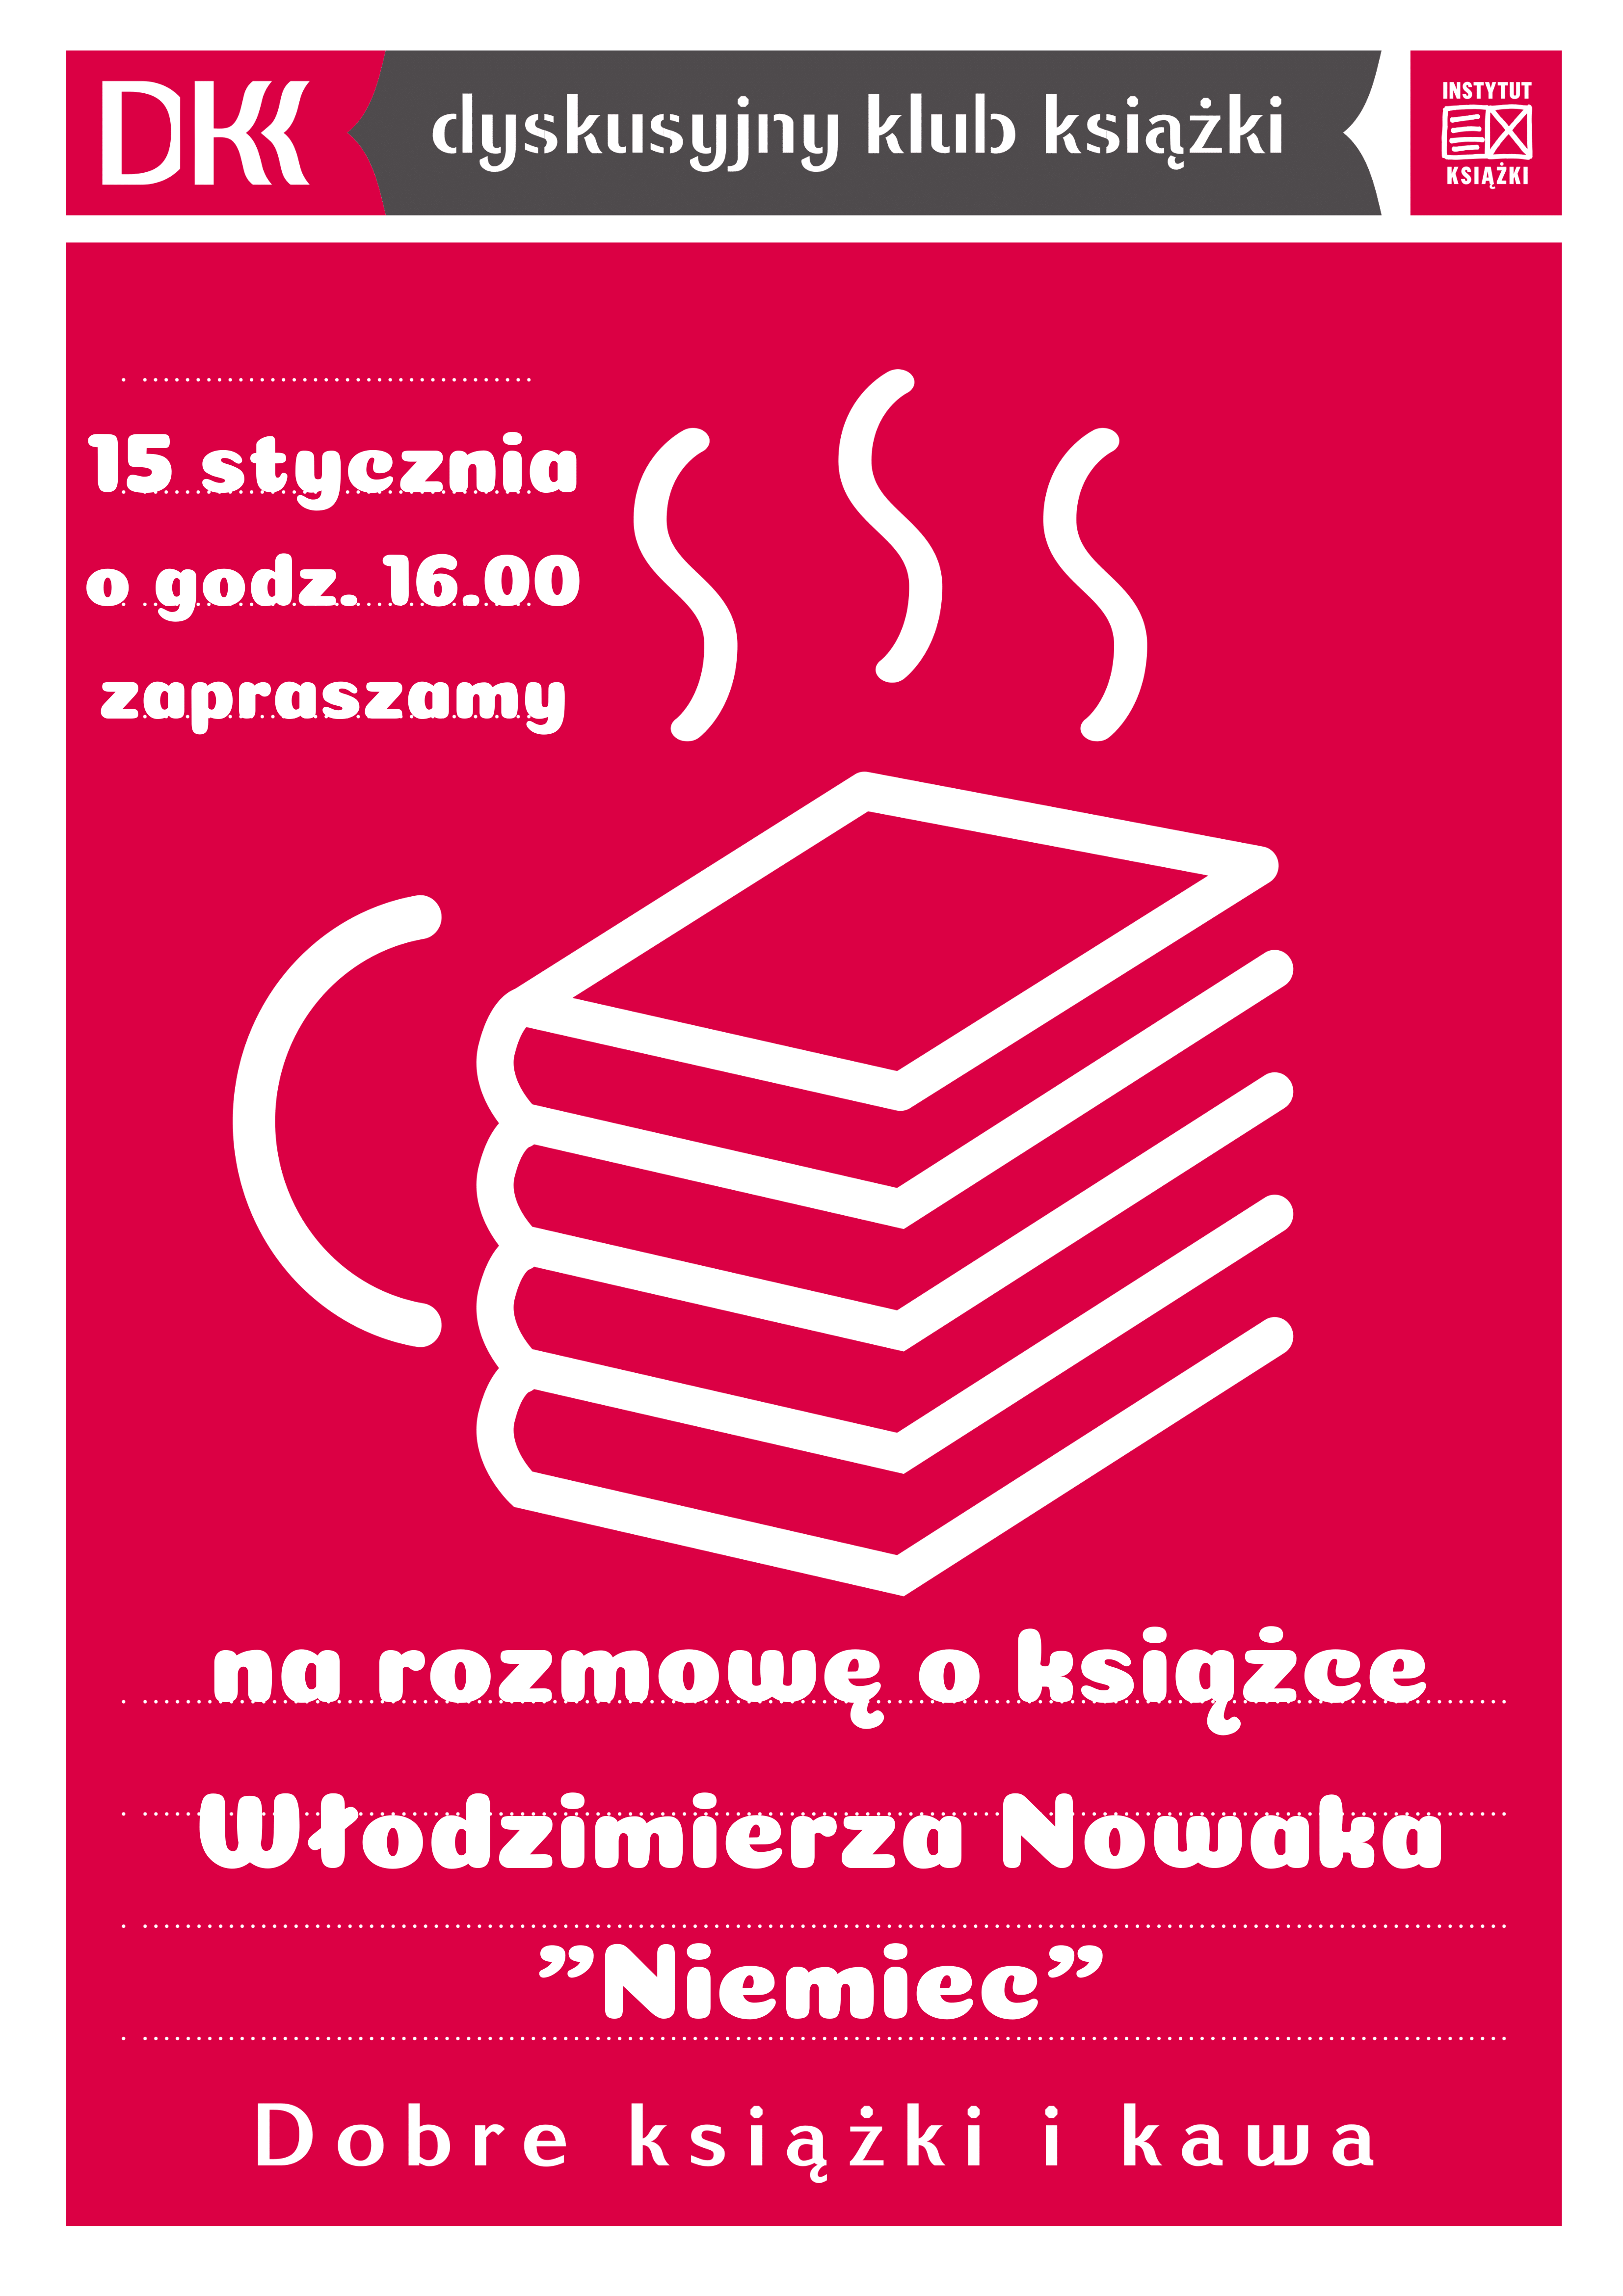 Plakat odnośnie spotkania Dyskusyjnego Klubu Książki